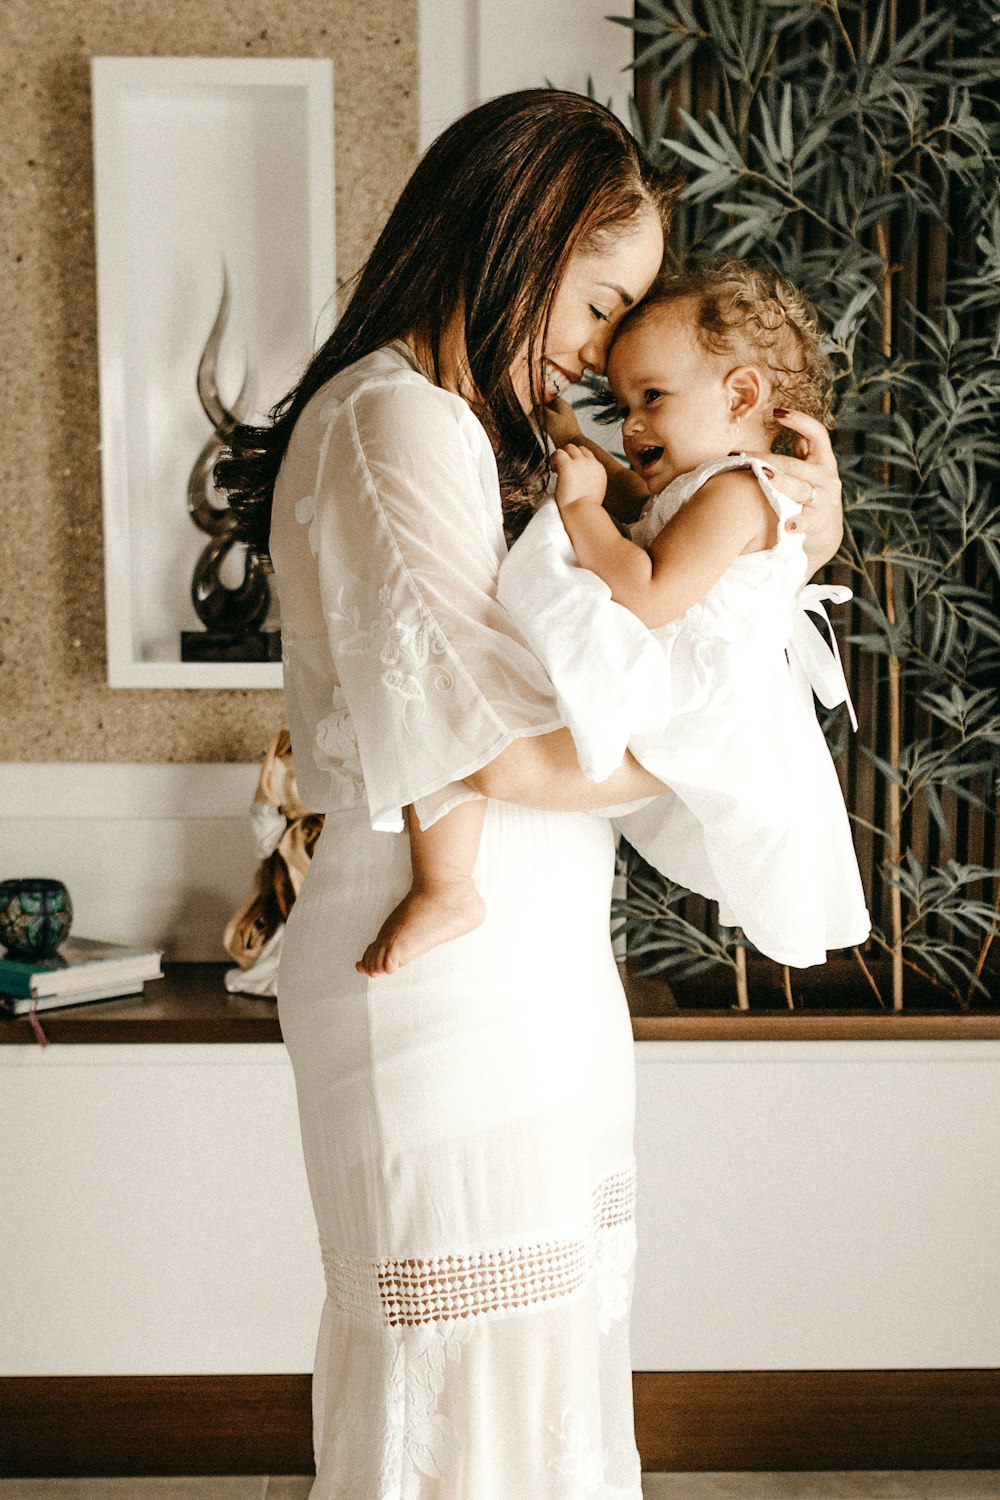 femme souriante en robe blanche tenant un enfant en bas âge